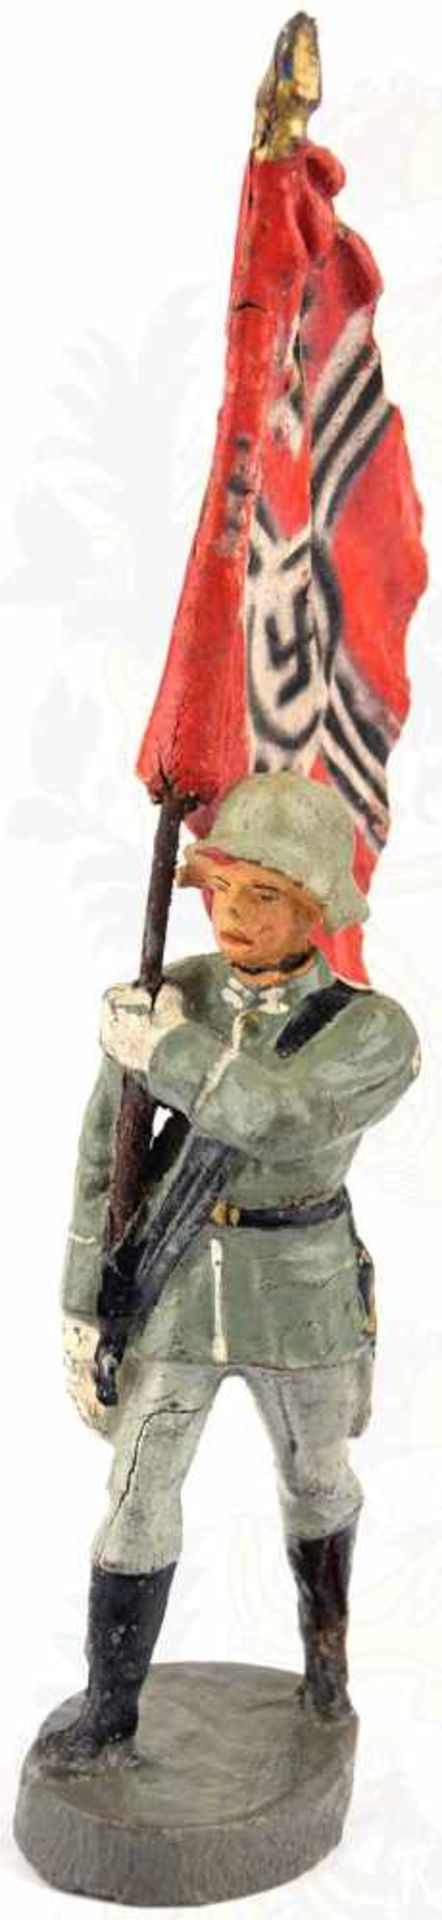 WEHRMACHT-FAHNENTRÄGER, mit Reichskriegsflagge, Herst. „Elastolin“, Figur u. Fahnentuch Masse, farb.